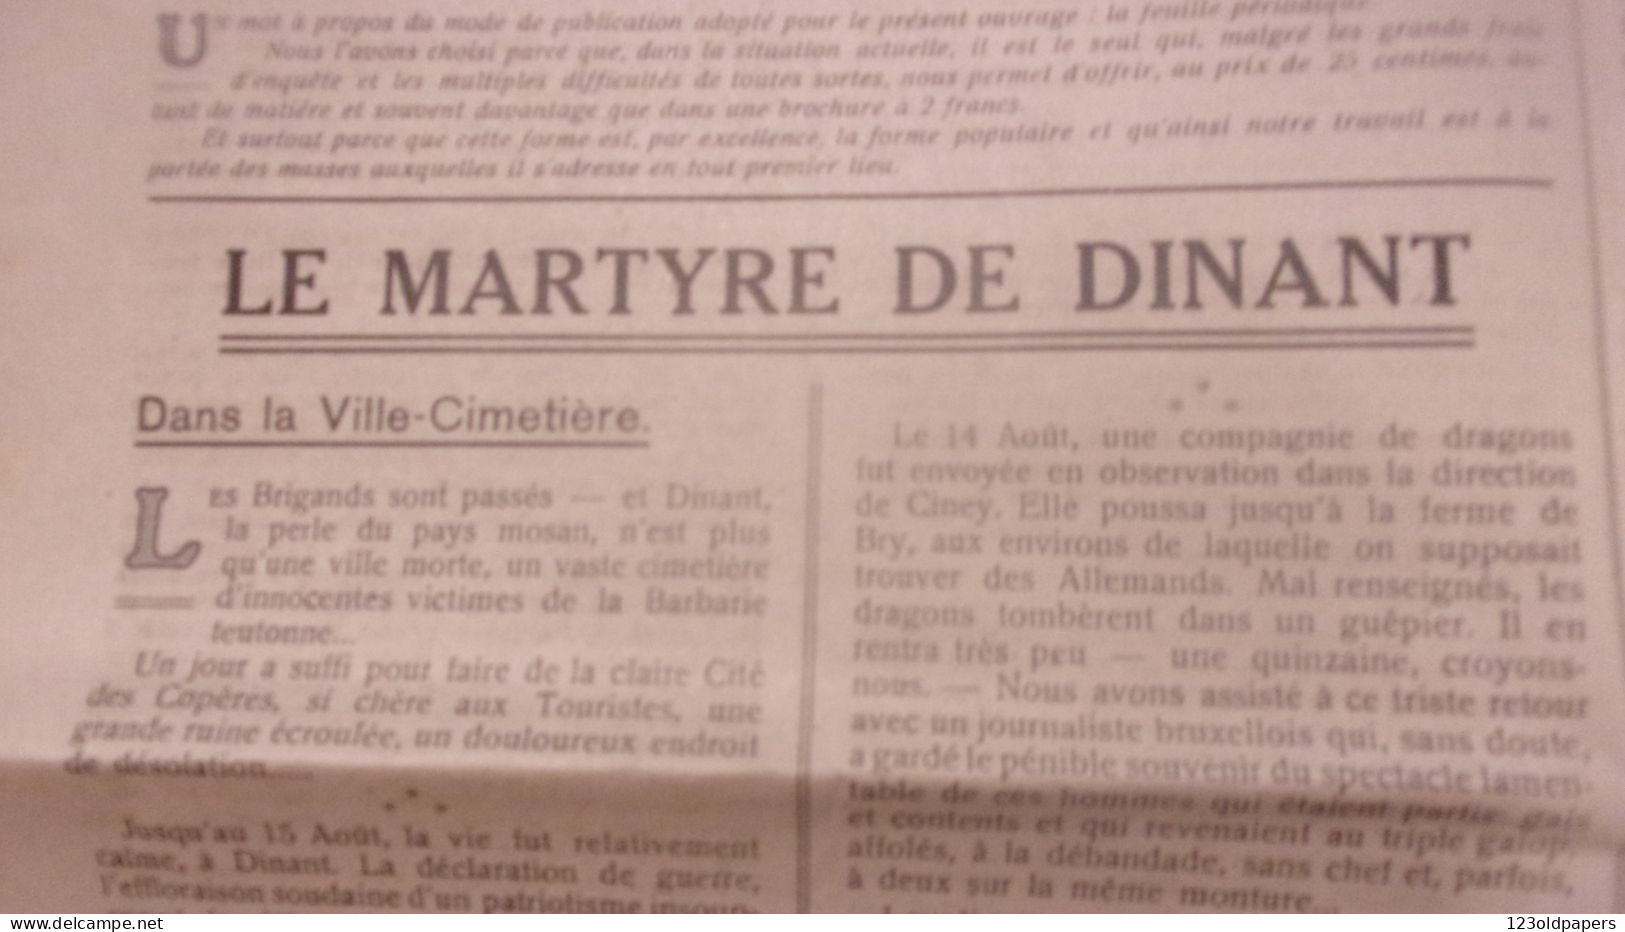 WWI RARE BELGIQUE 1914 N ° 1 LE CRI DES MARTYRS JOURNAL DINANT LE MARTYR  PUBLICATIONS DIONANTENSIS ENQUETE - 1914-18